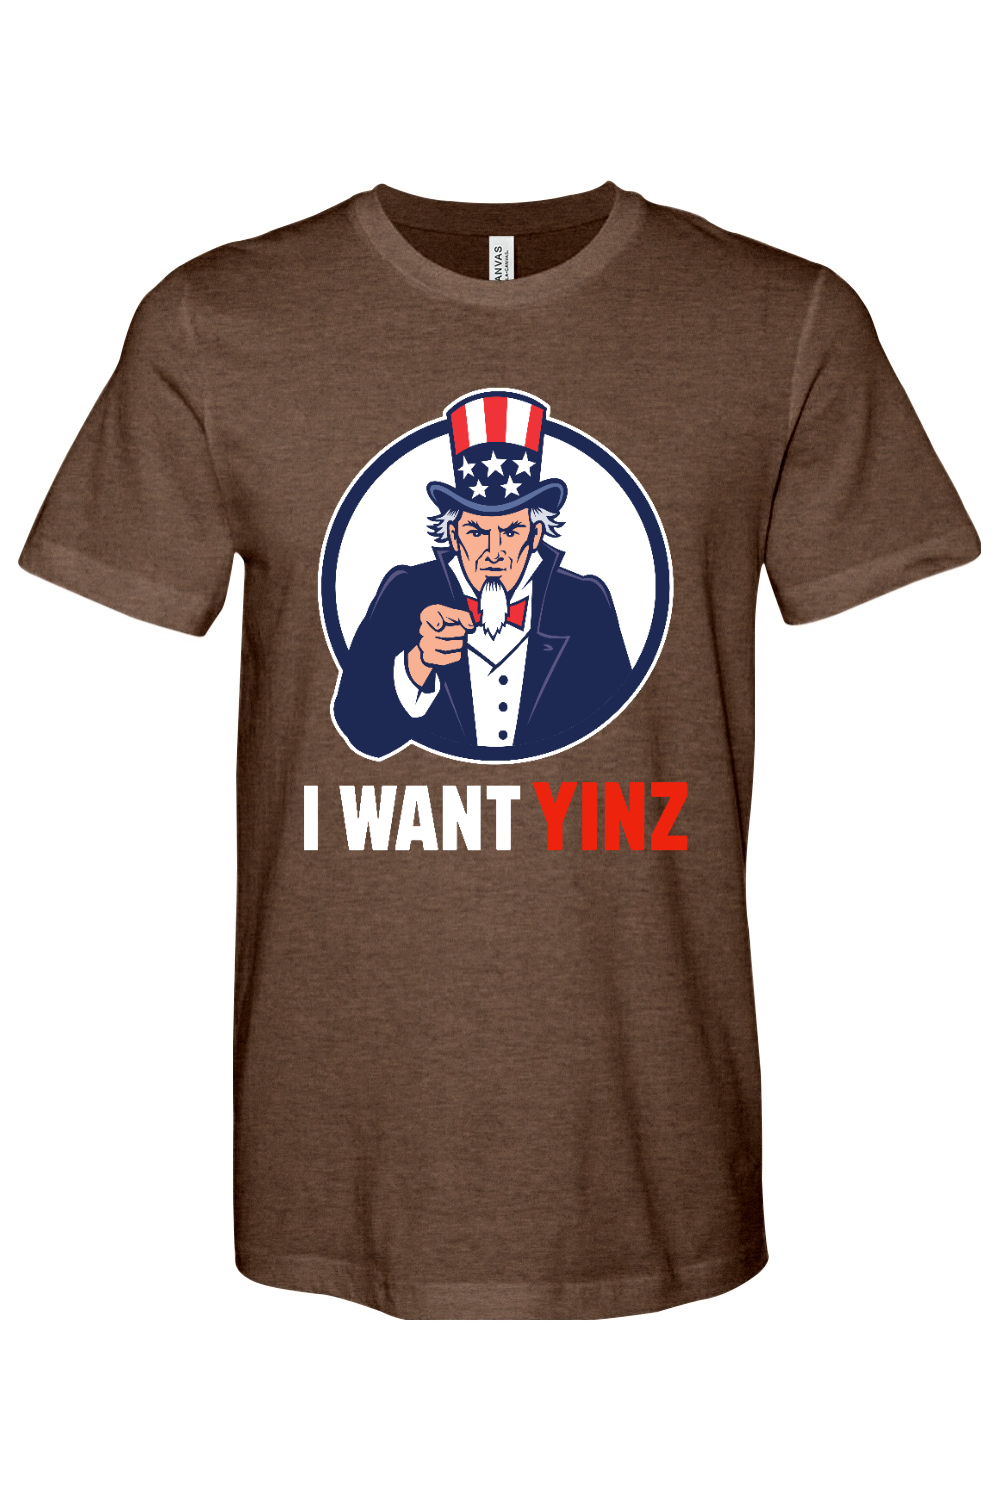 Uncle Sam - I Want Yinz - Yinzylvania